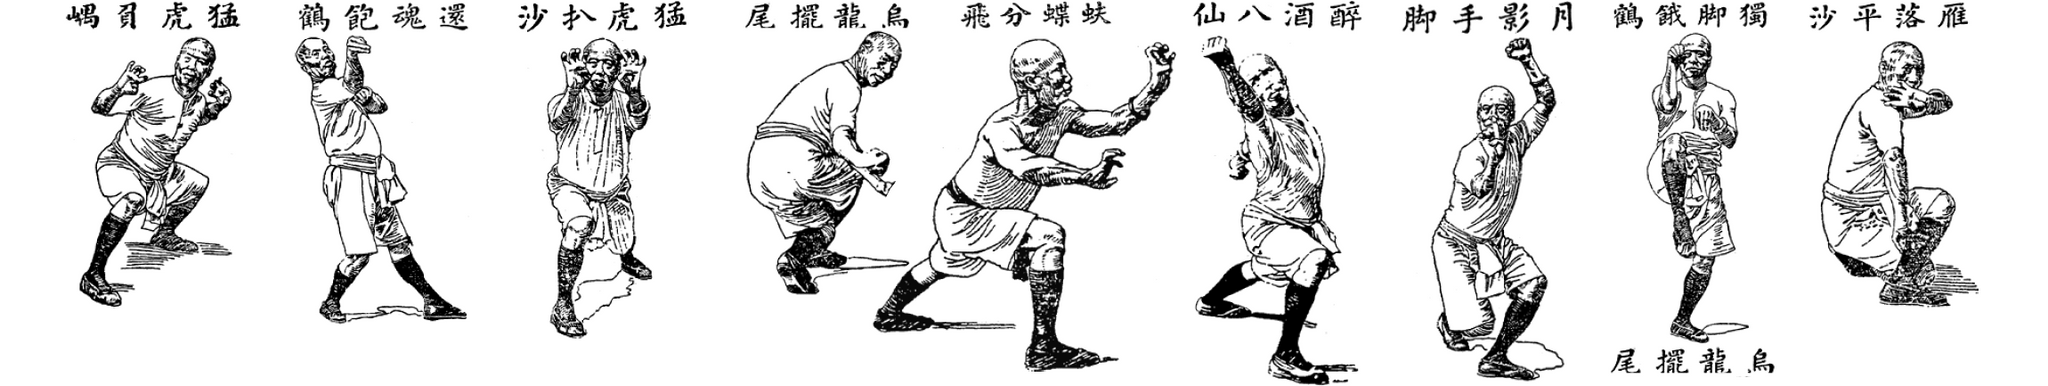 Lam Sai Wing. Fu Hok Seung Ying Kuen. Tiger and Crane Double Form (Hong Kong, 1957)